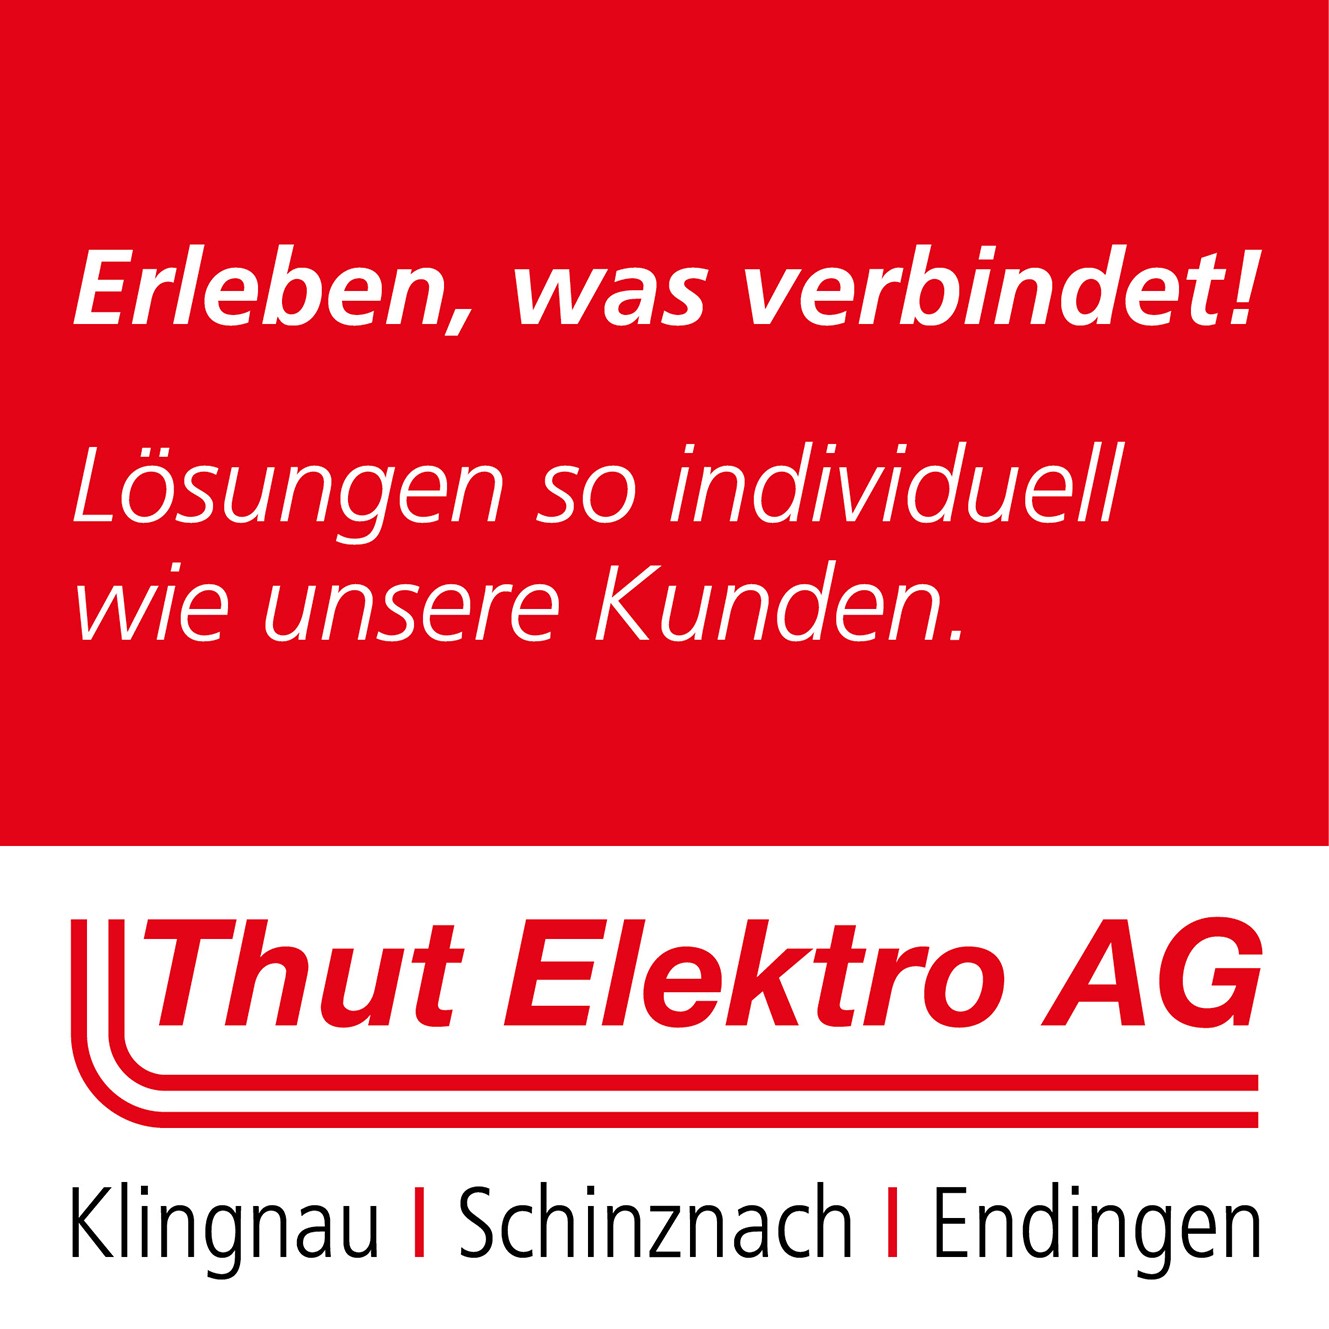 Bilder Thut Elektro AG